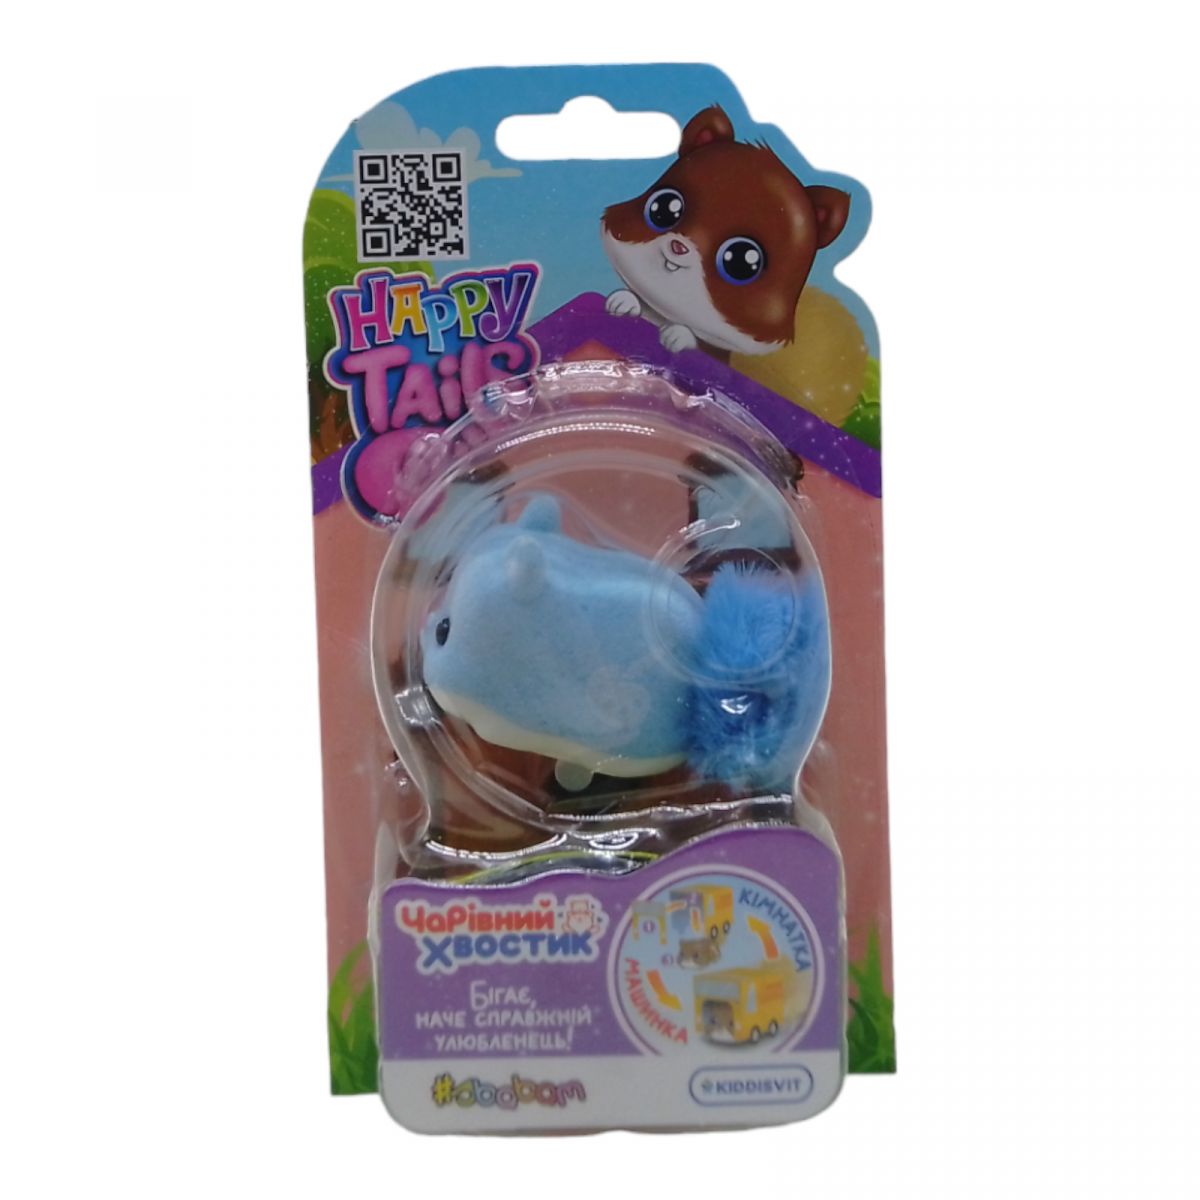 Интерактивная игрушка Happy Tails" – Волшебный хвостик" Пабло